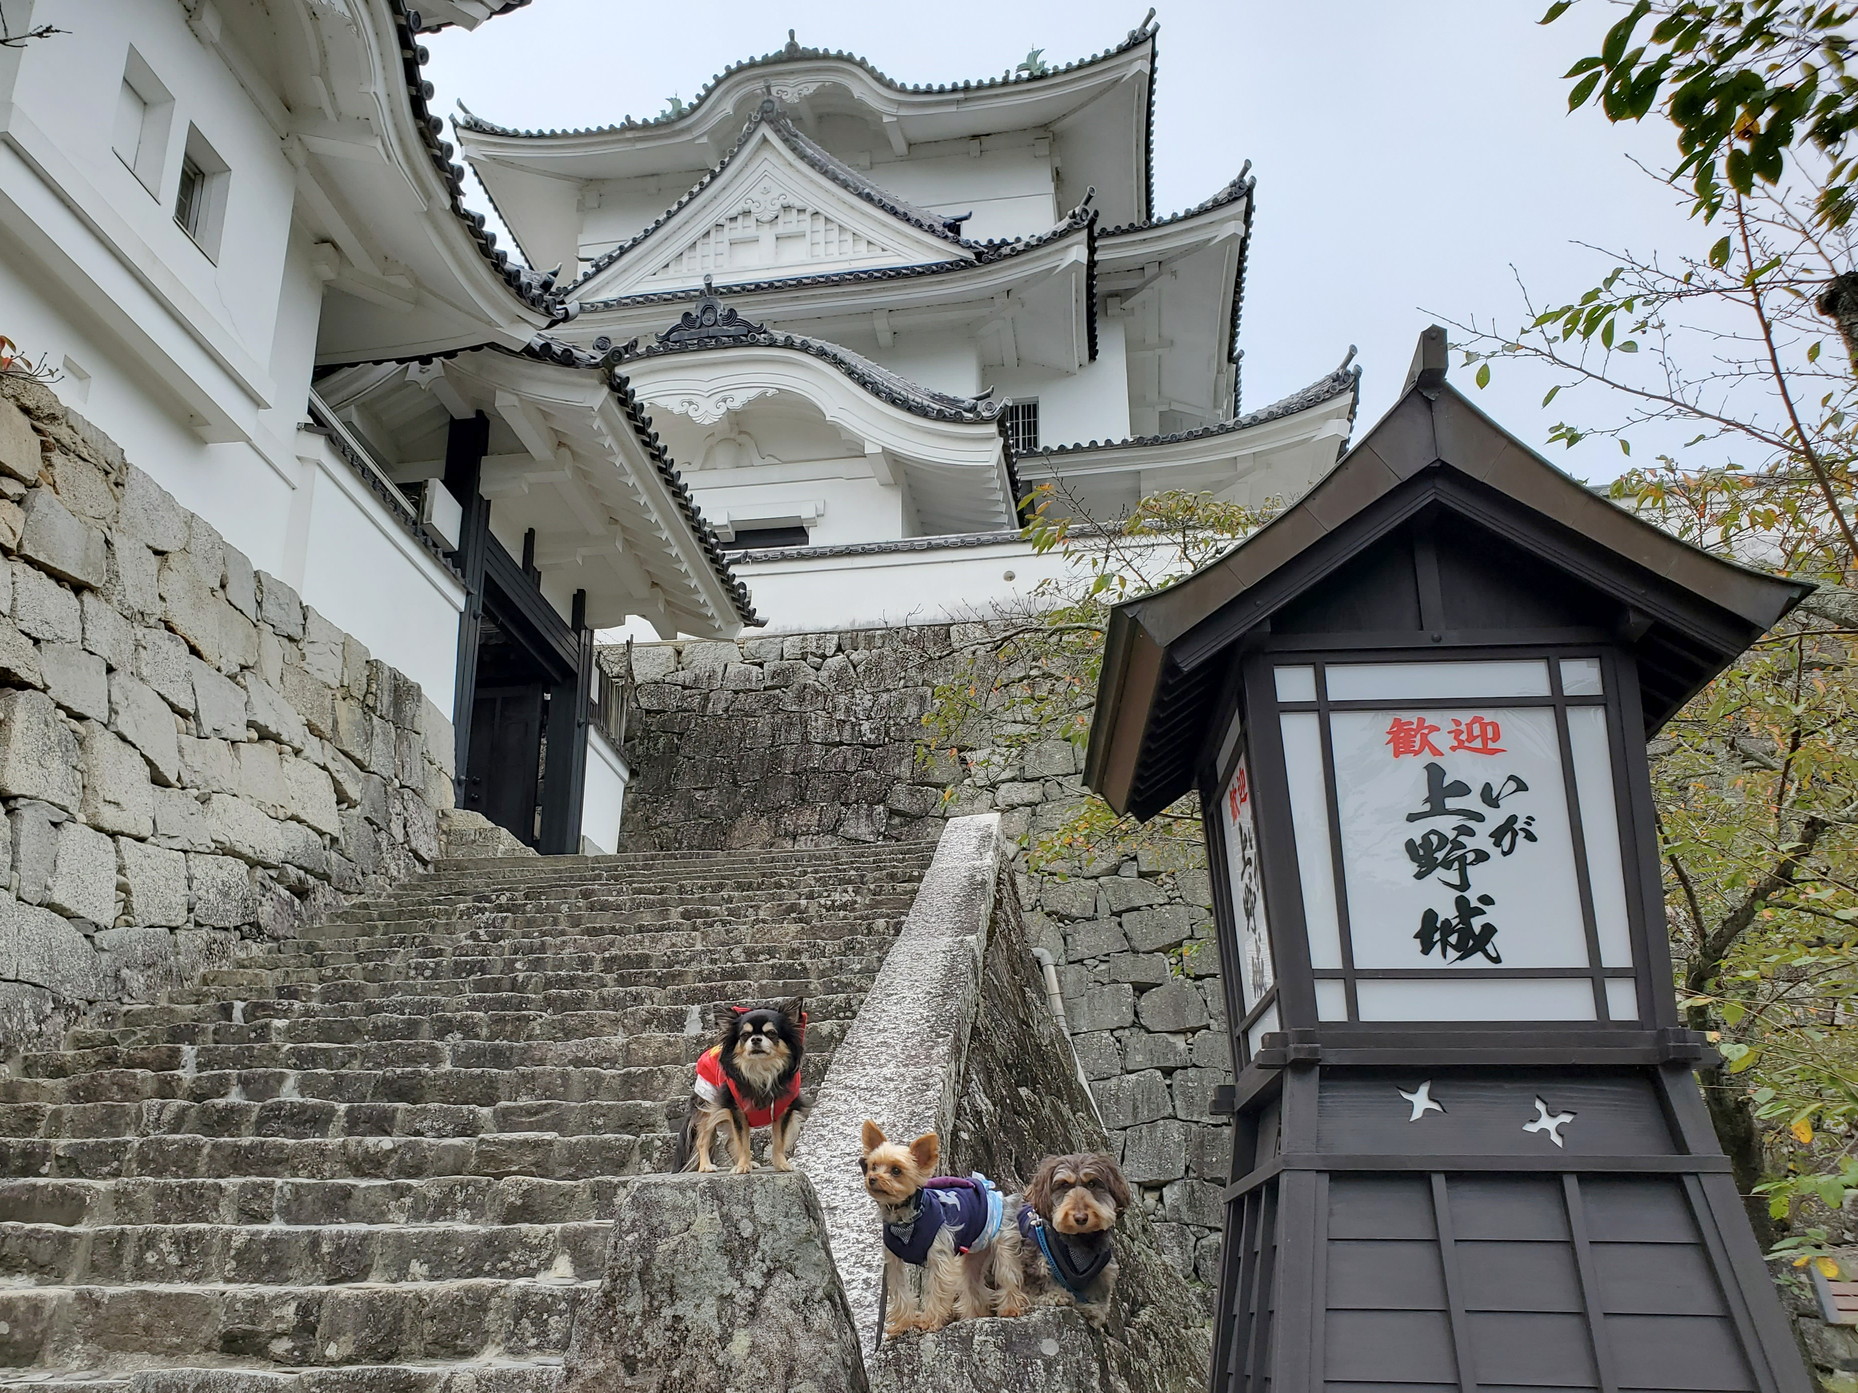 上野 城 伊賀 伊賀・上野城 日本でも随一の石垣の高さを誇る日本100名城